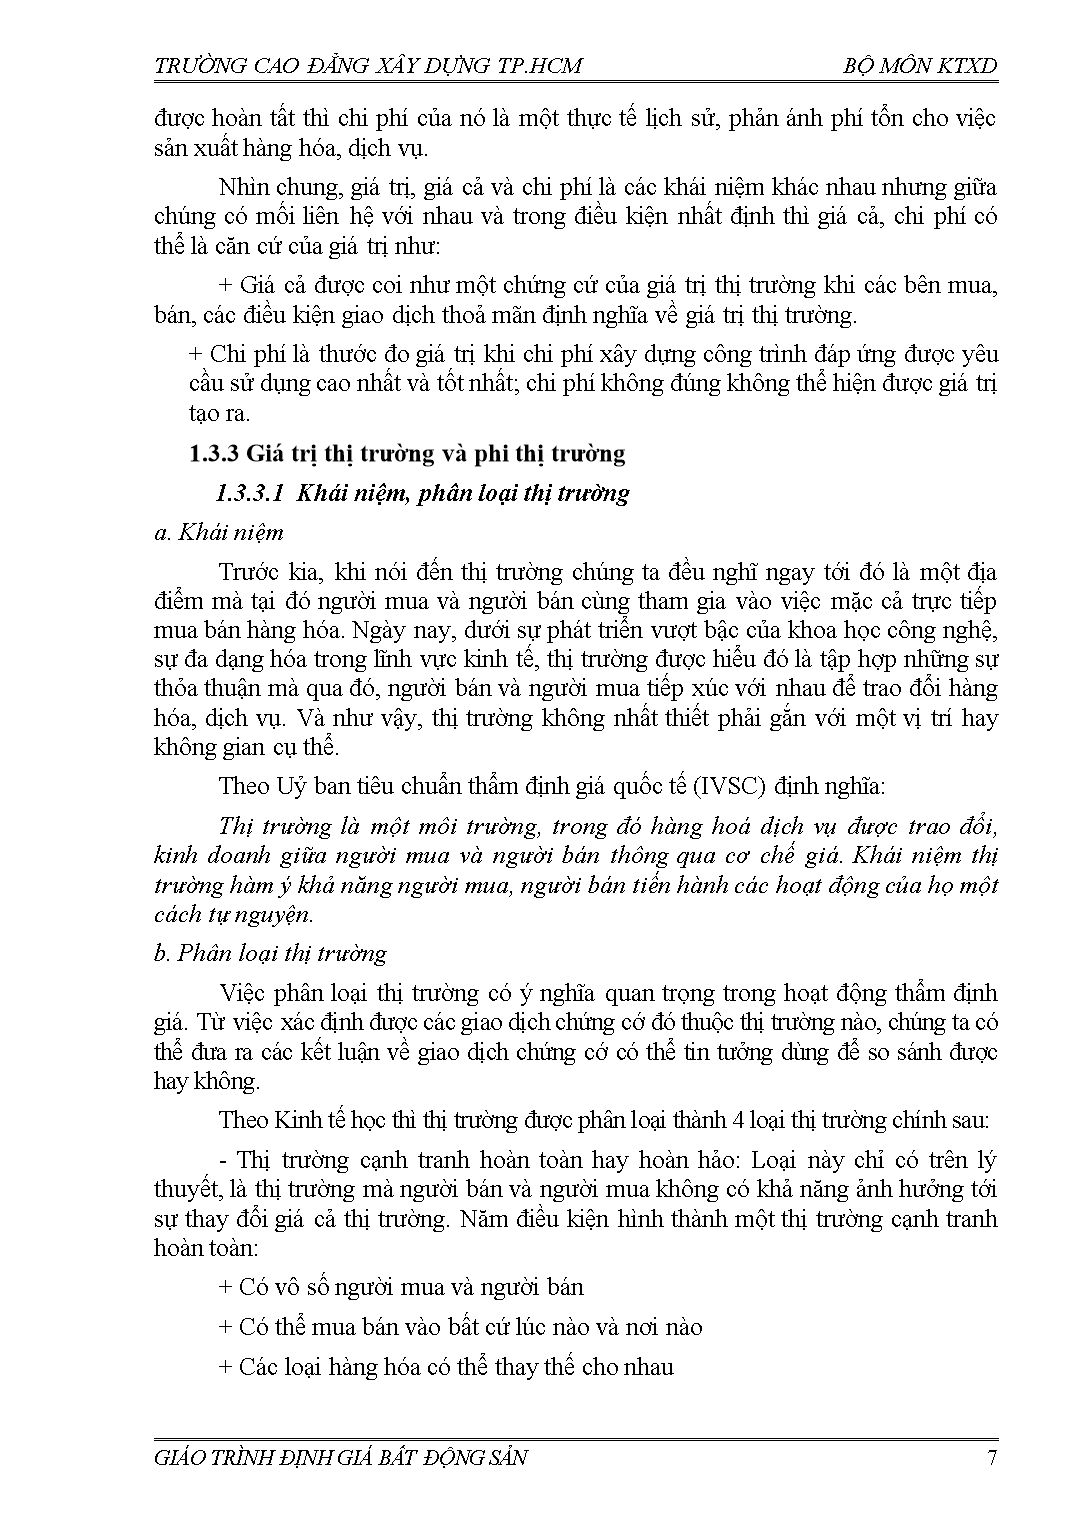 Giáo trình Định giá bất động sản trang 7